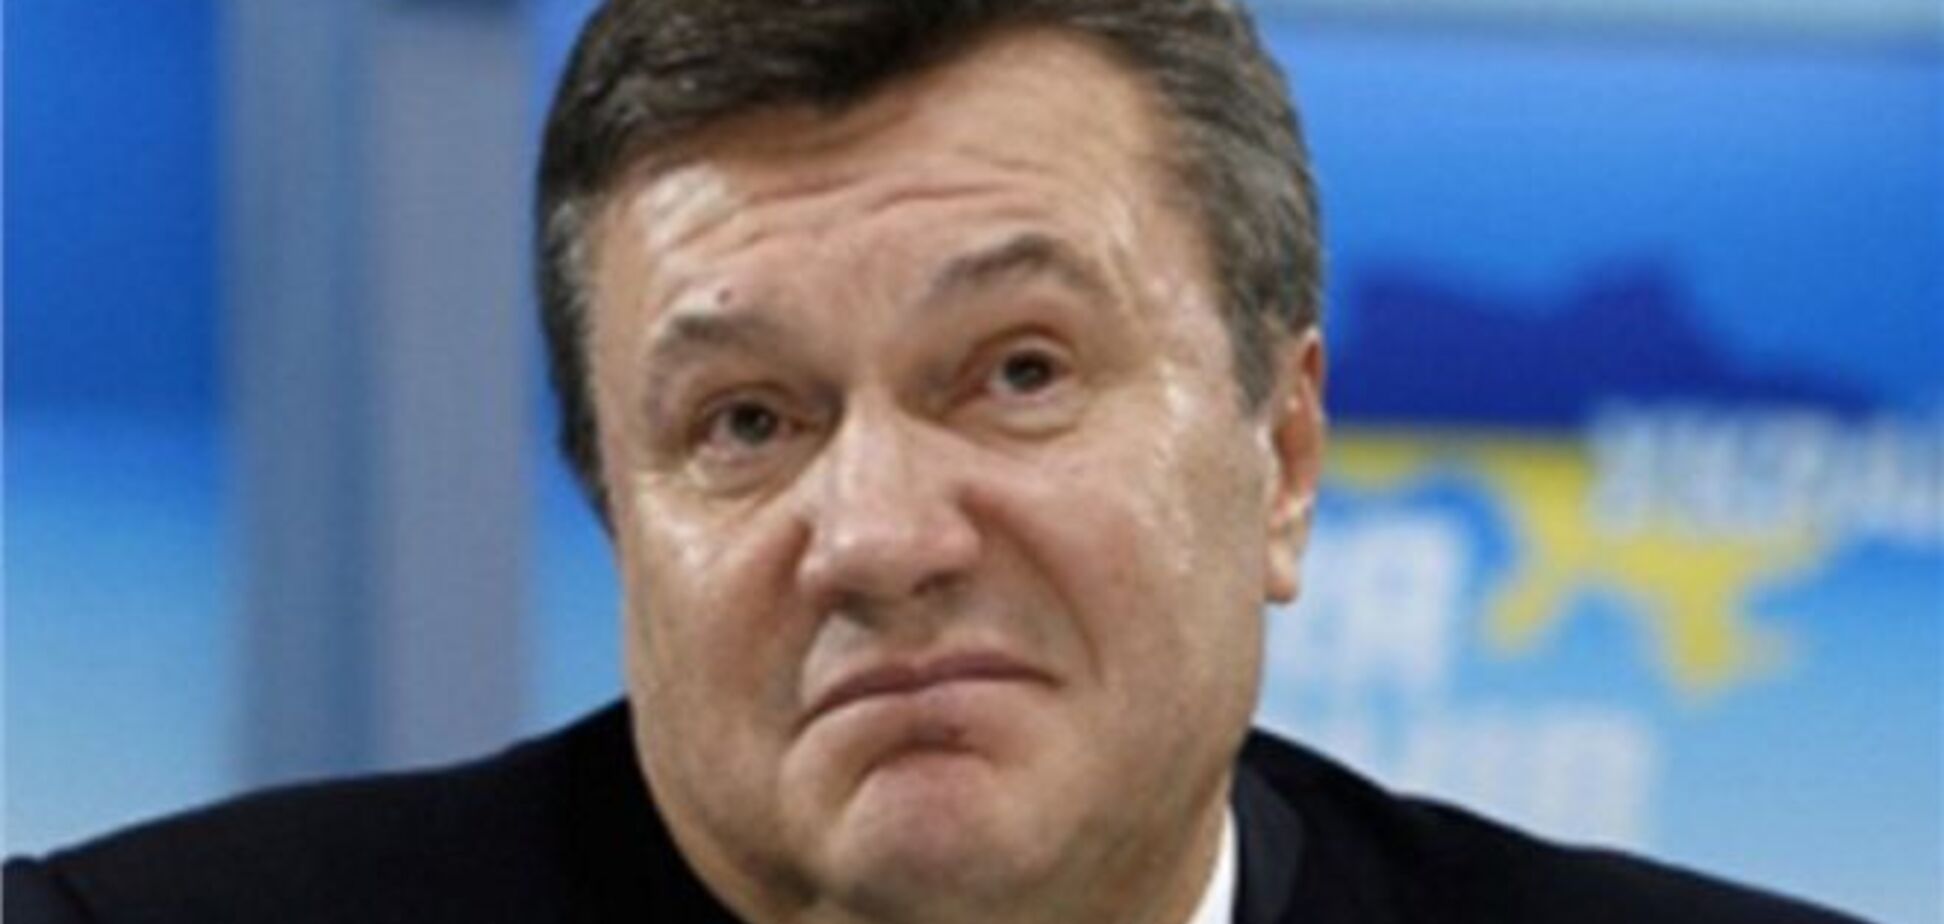 Треть россиян не знает, кто такой Янукович - опрос